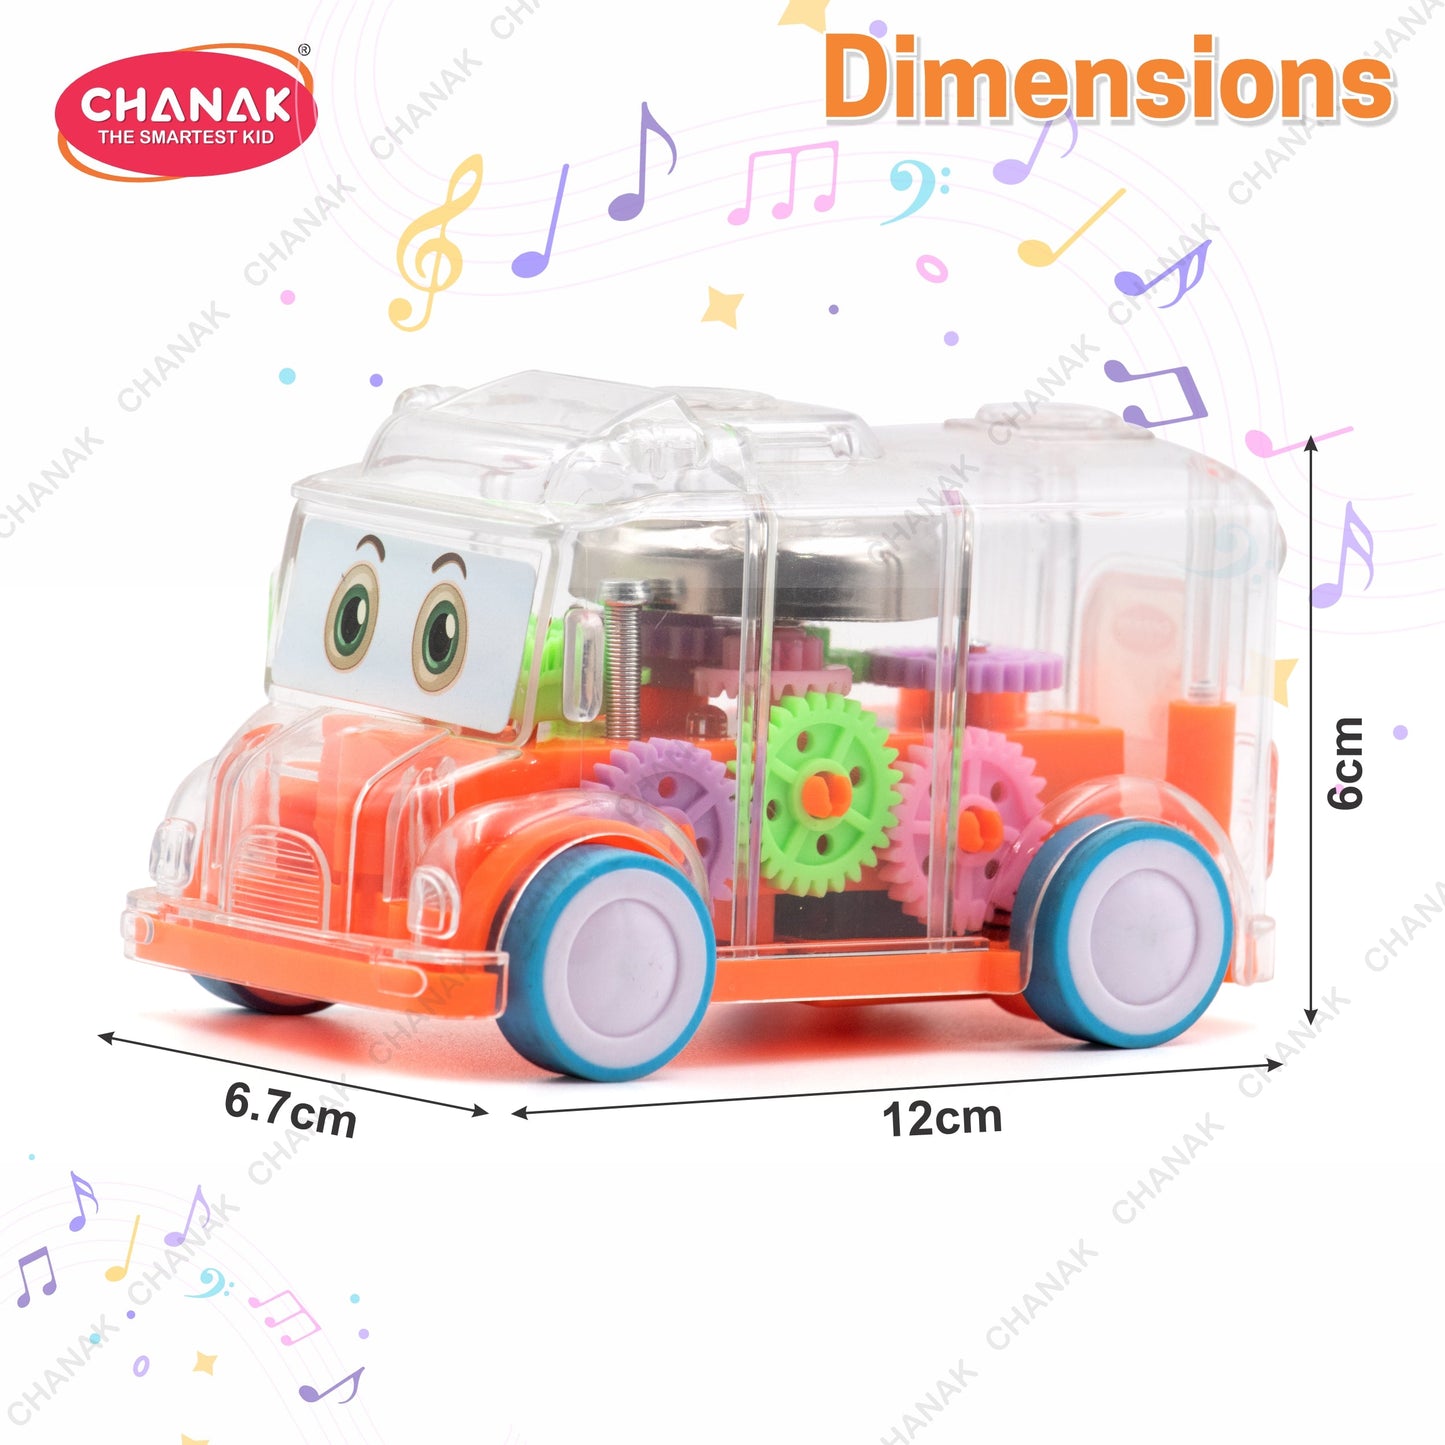 Chanak Transparent Gear Bus for Kids (Orange)